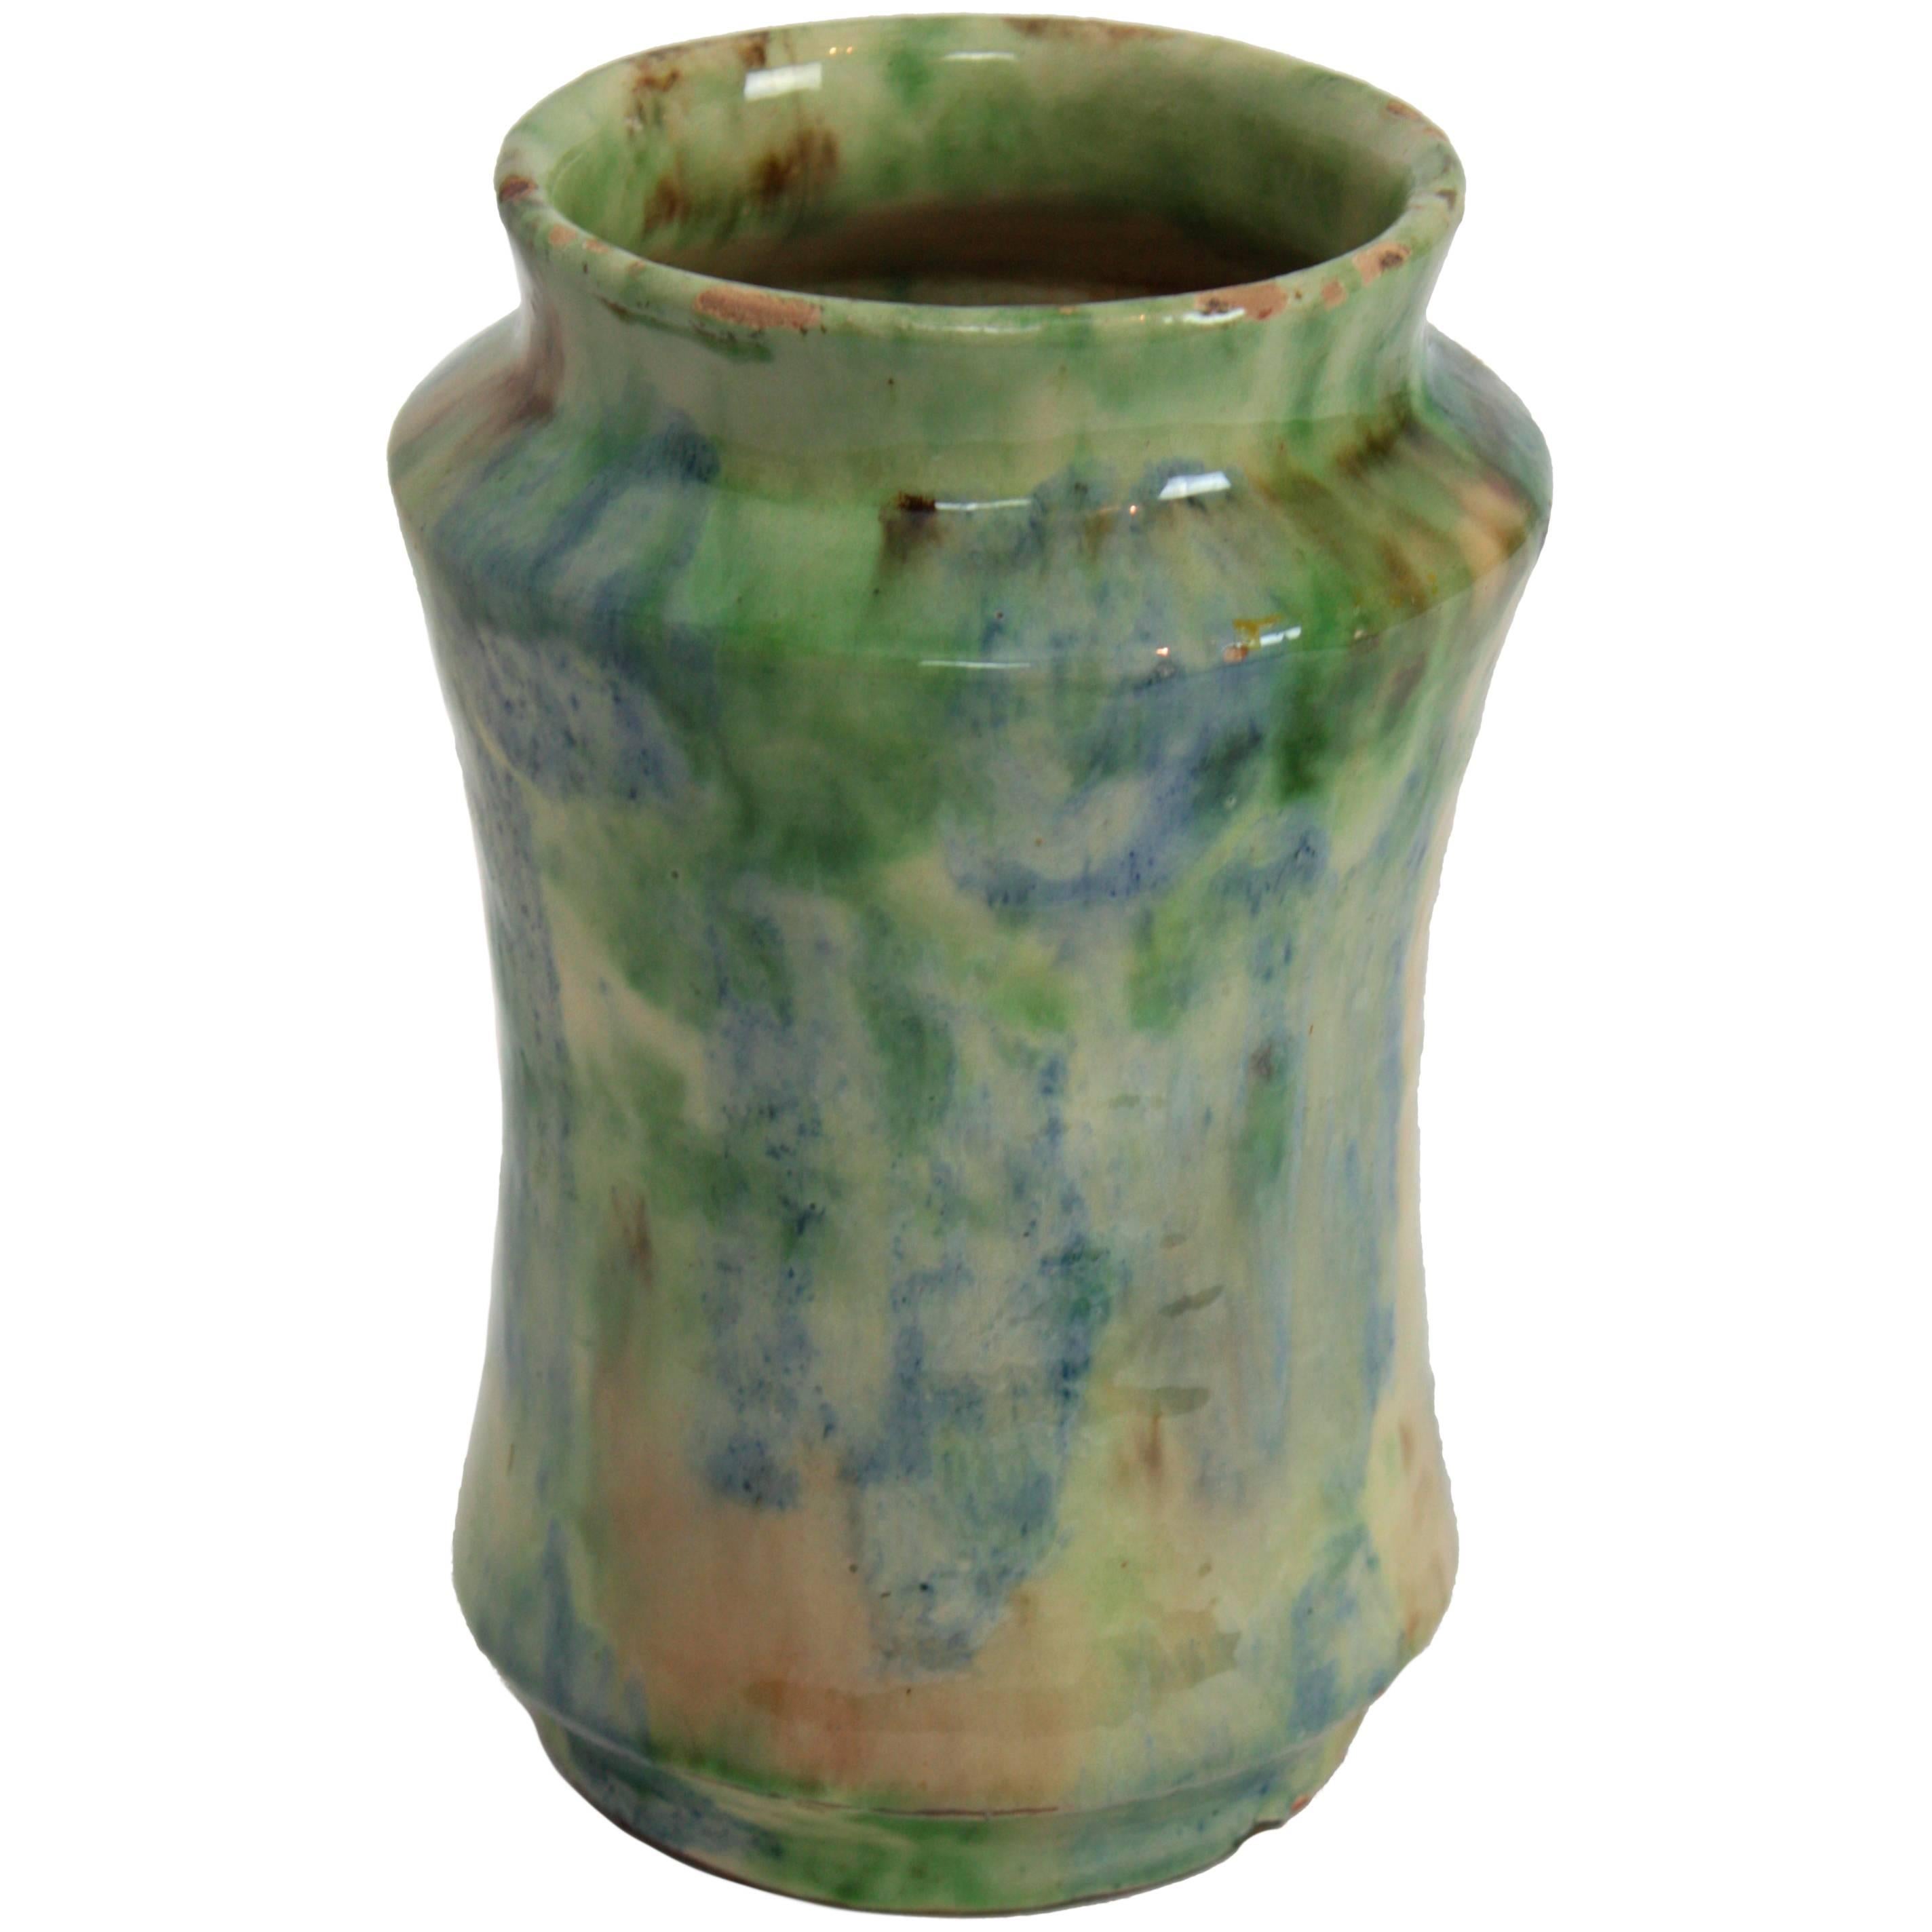 Vase aus glasierter Terrakotta in Grün-, Blau- und Beigetönen 
Traditionelle spanische glasierte Keramikvase 